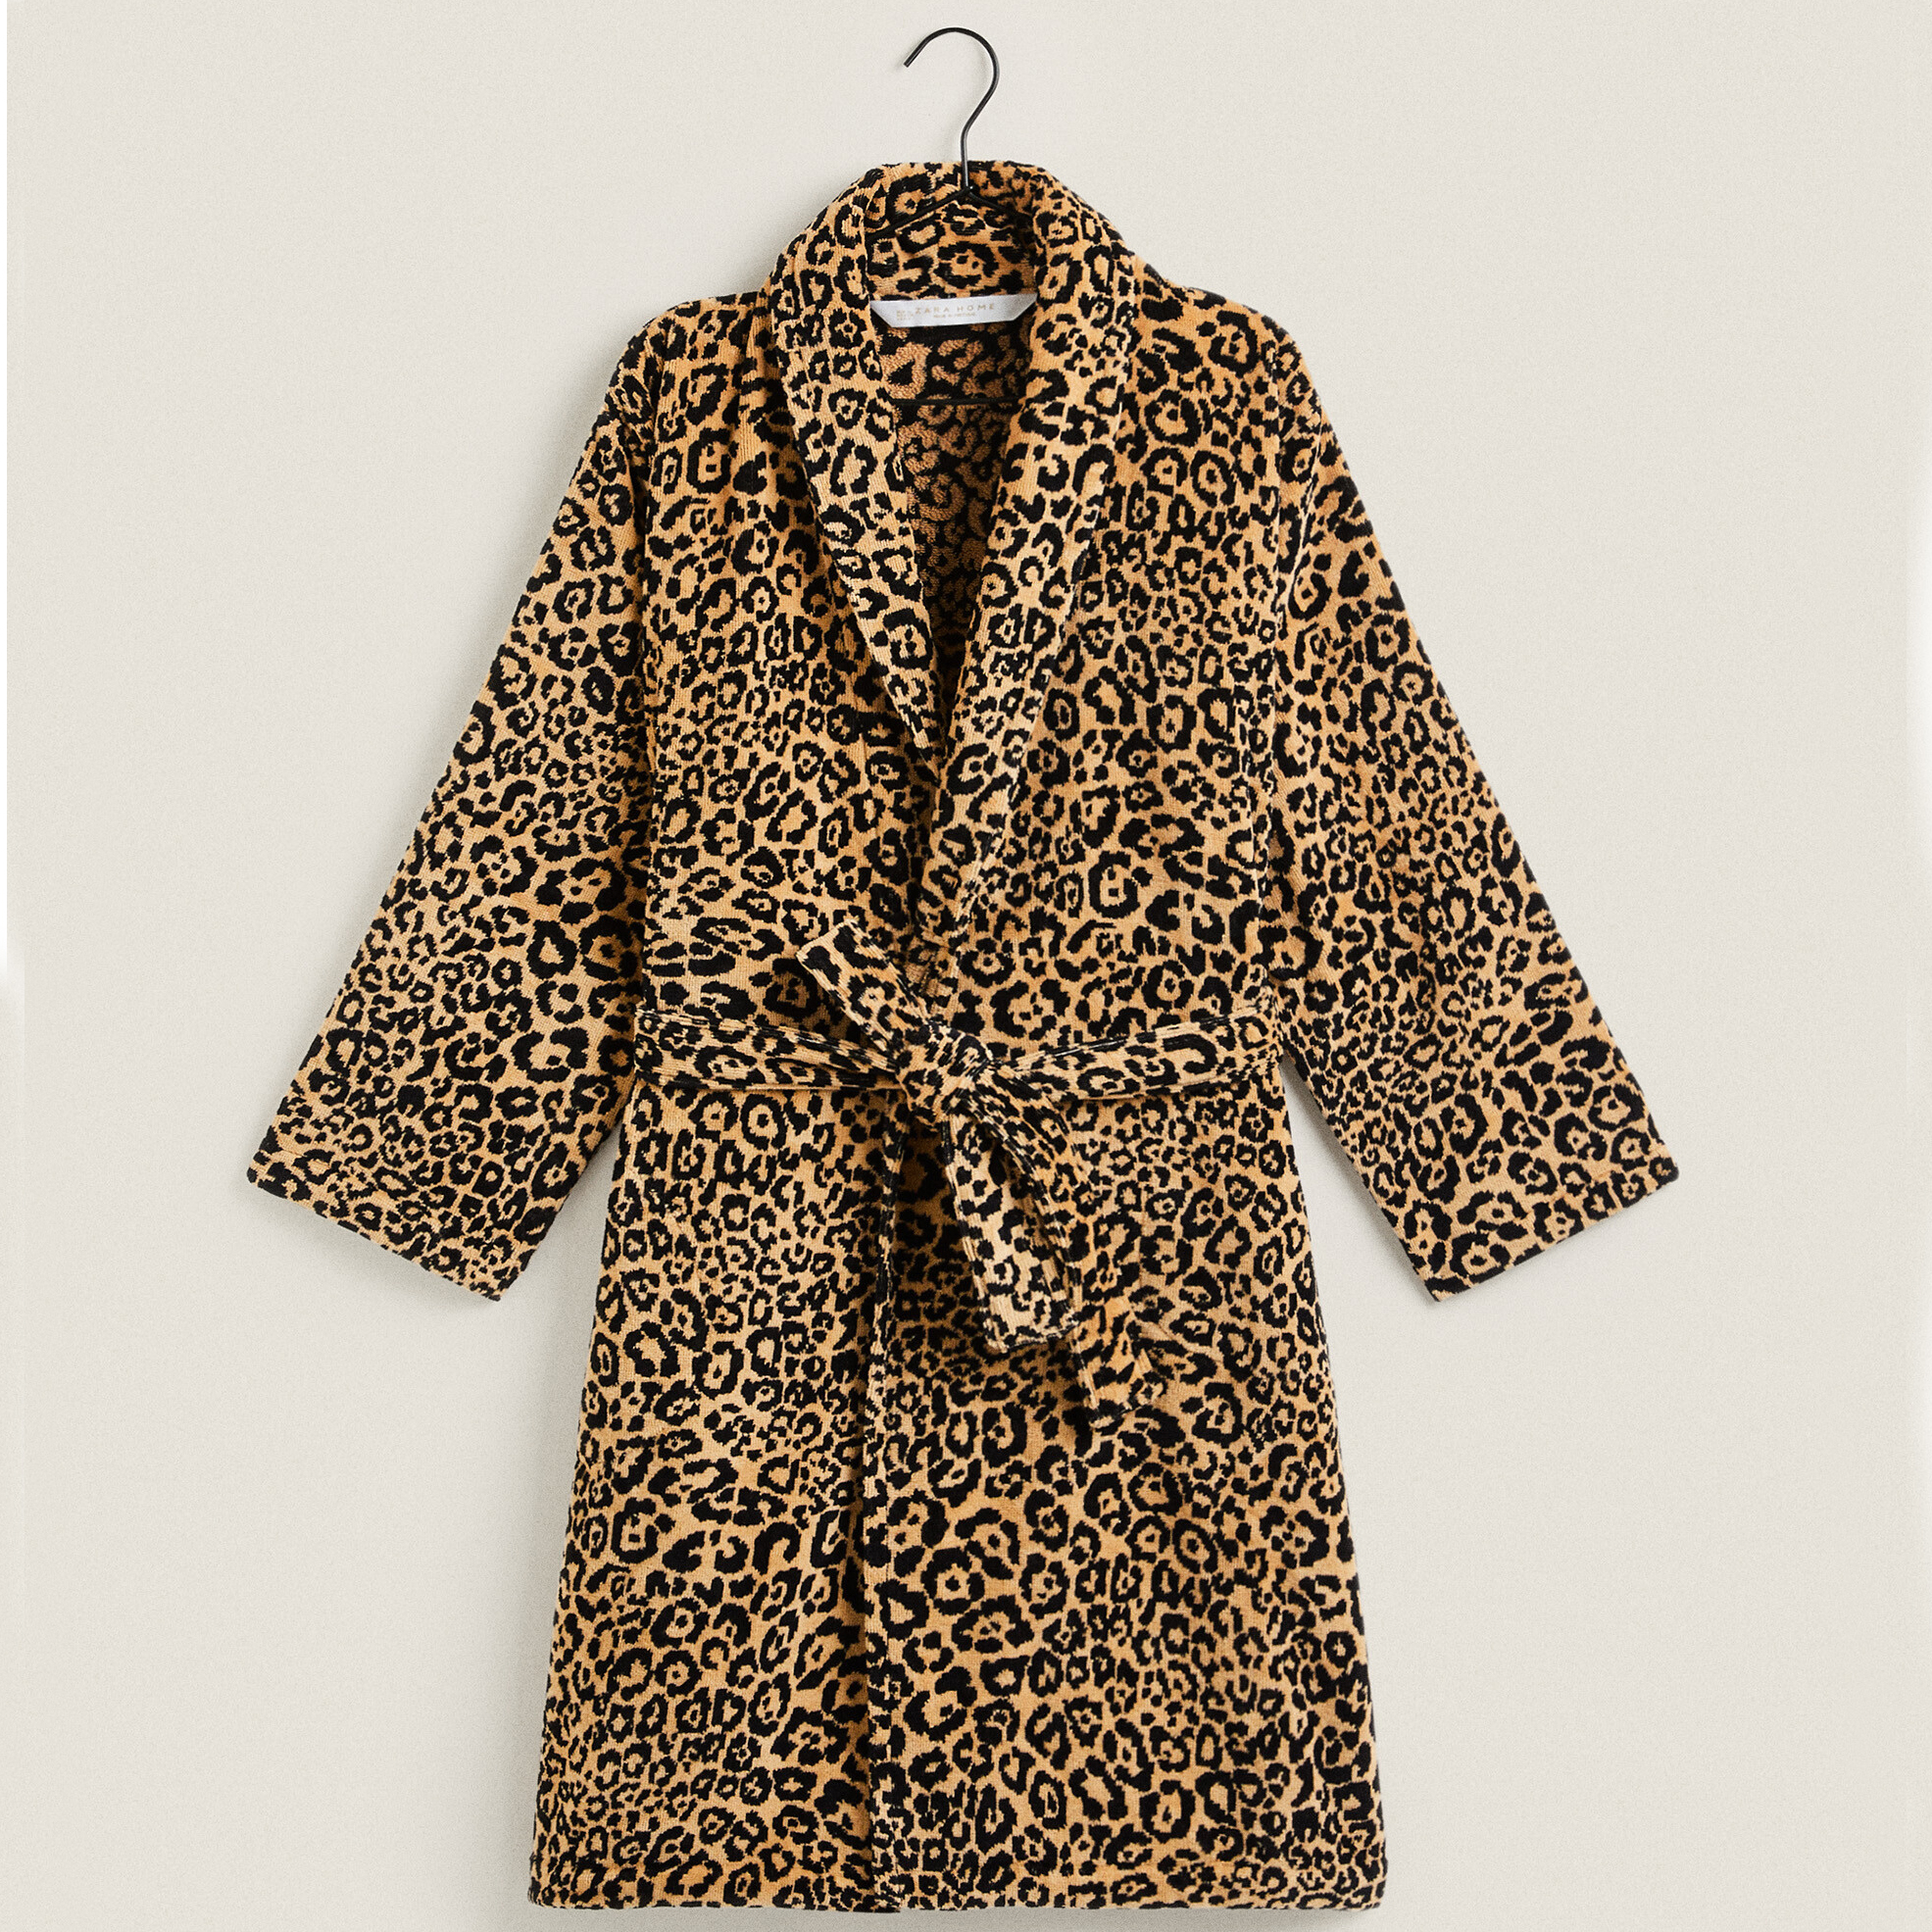 Банный халат Zara Home Leopard Jacquard, коричневый/черный